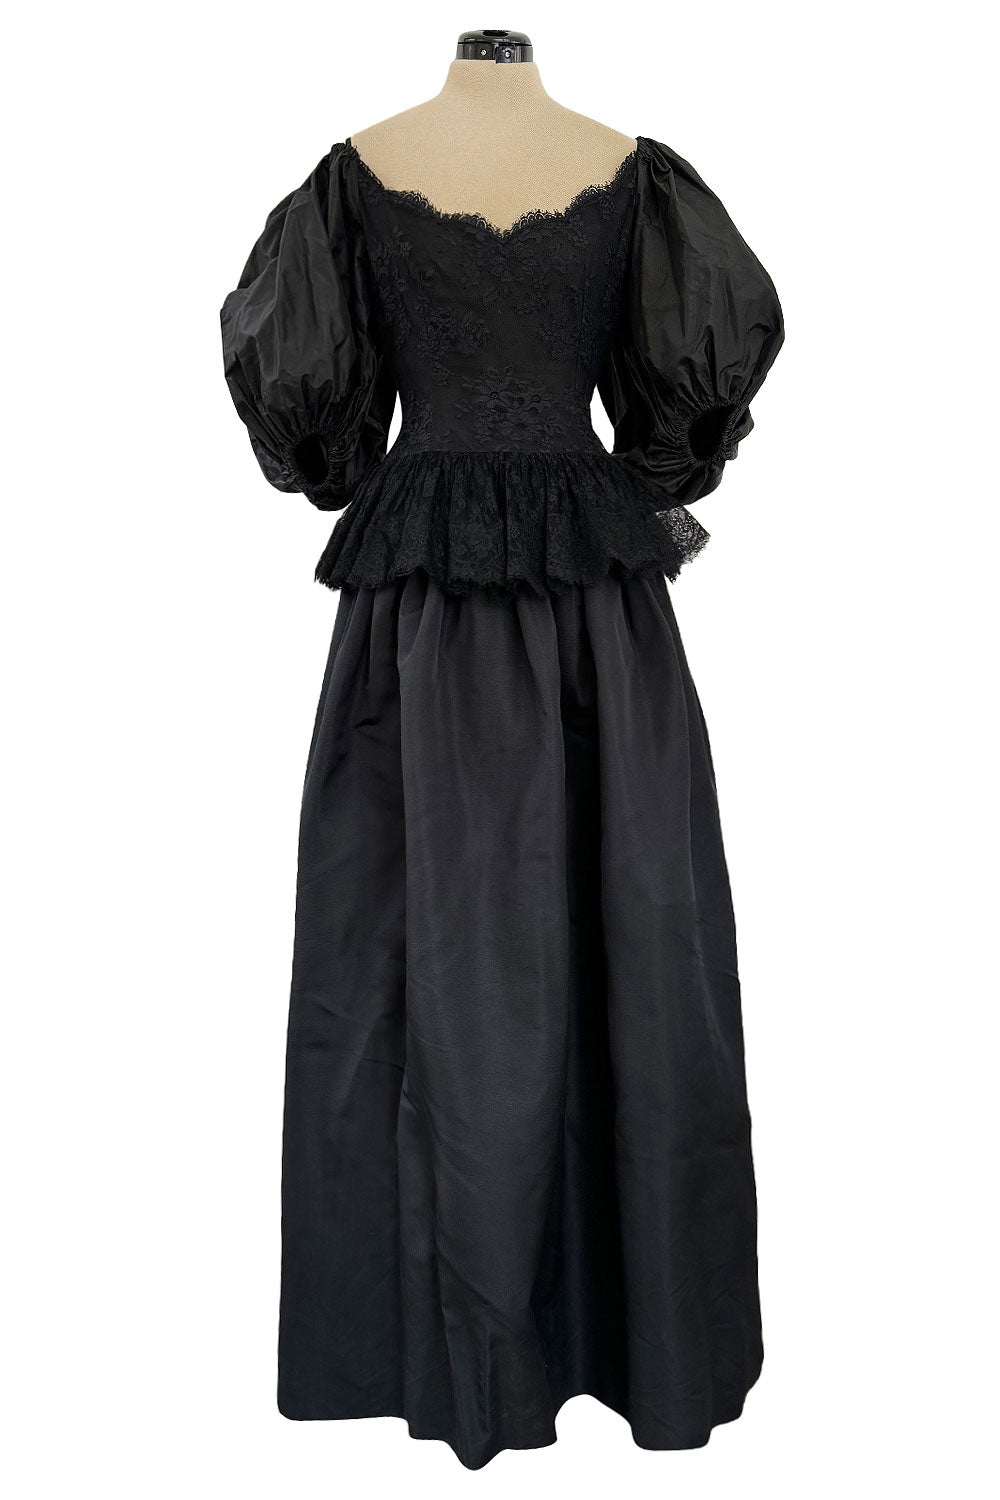 Victorian Design Corded Lace - Black  Victorian design, Corded lace,  Victorian